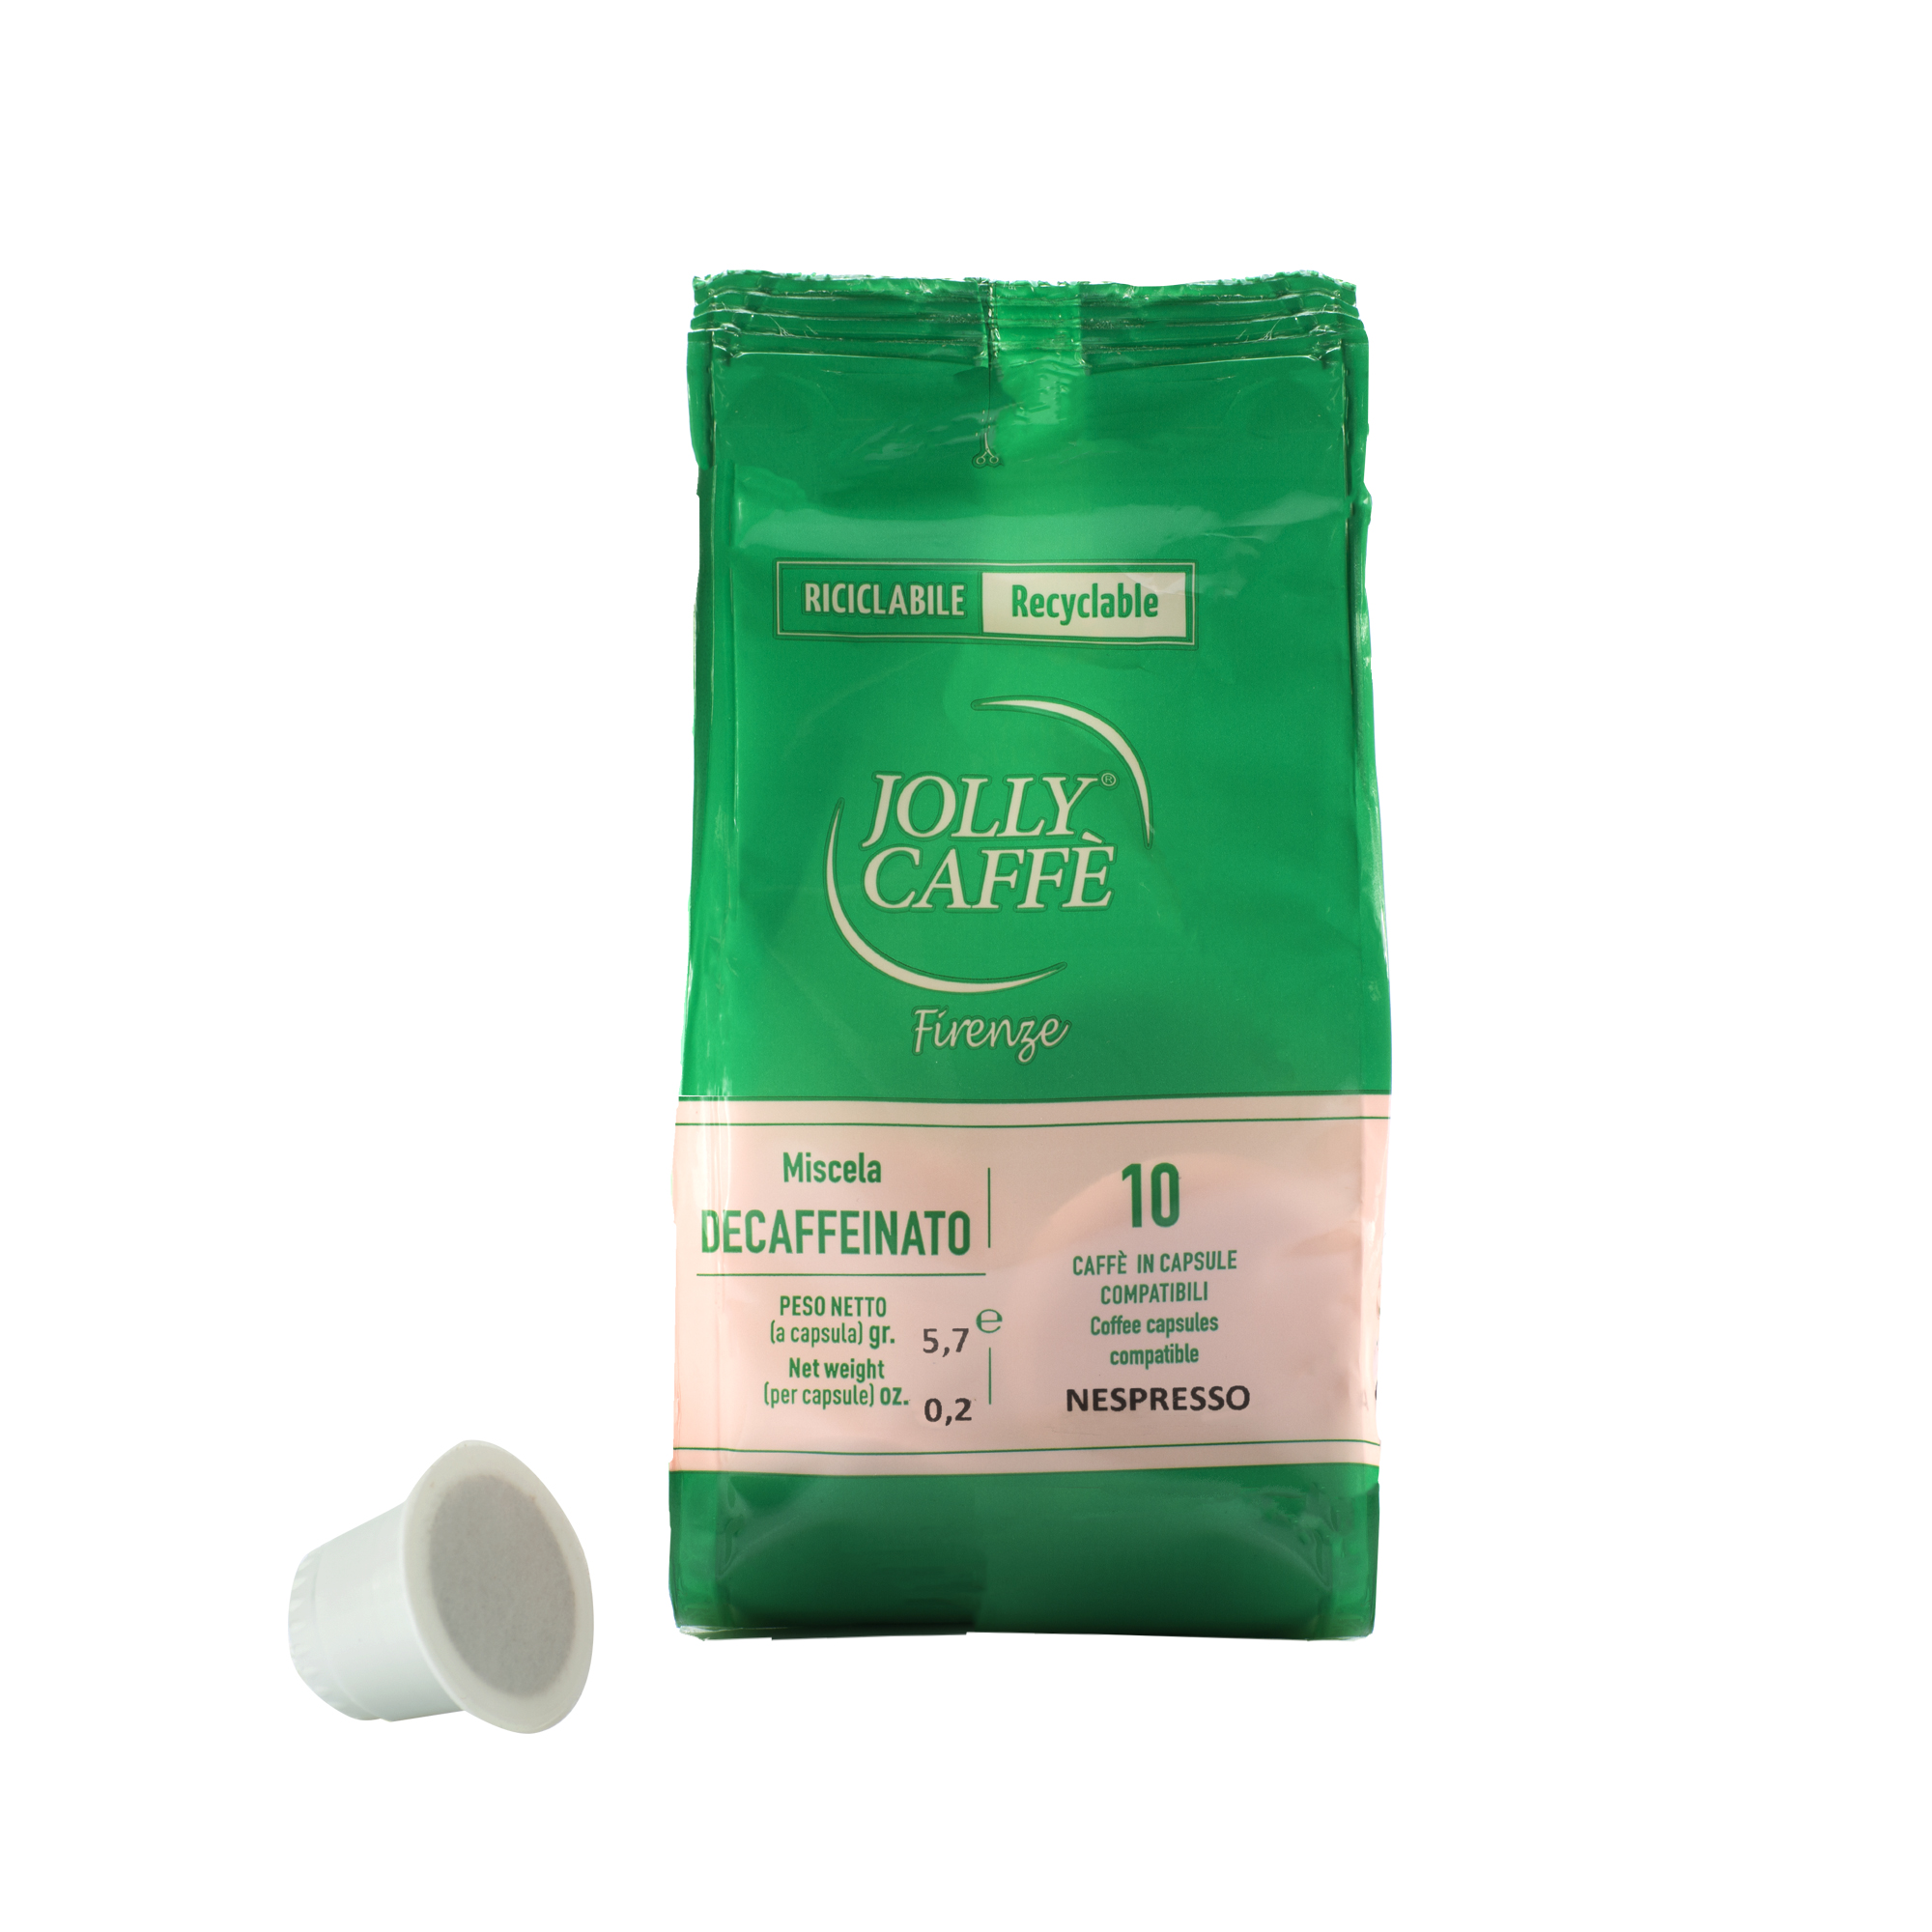 JOLLY Caffé - Koffeinfrei Kapseln - 100 Stk Box